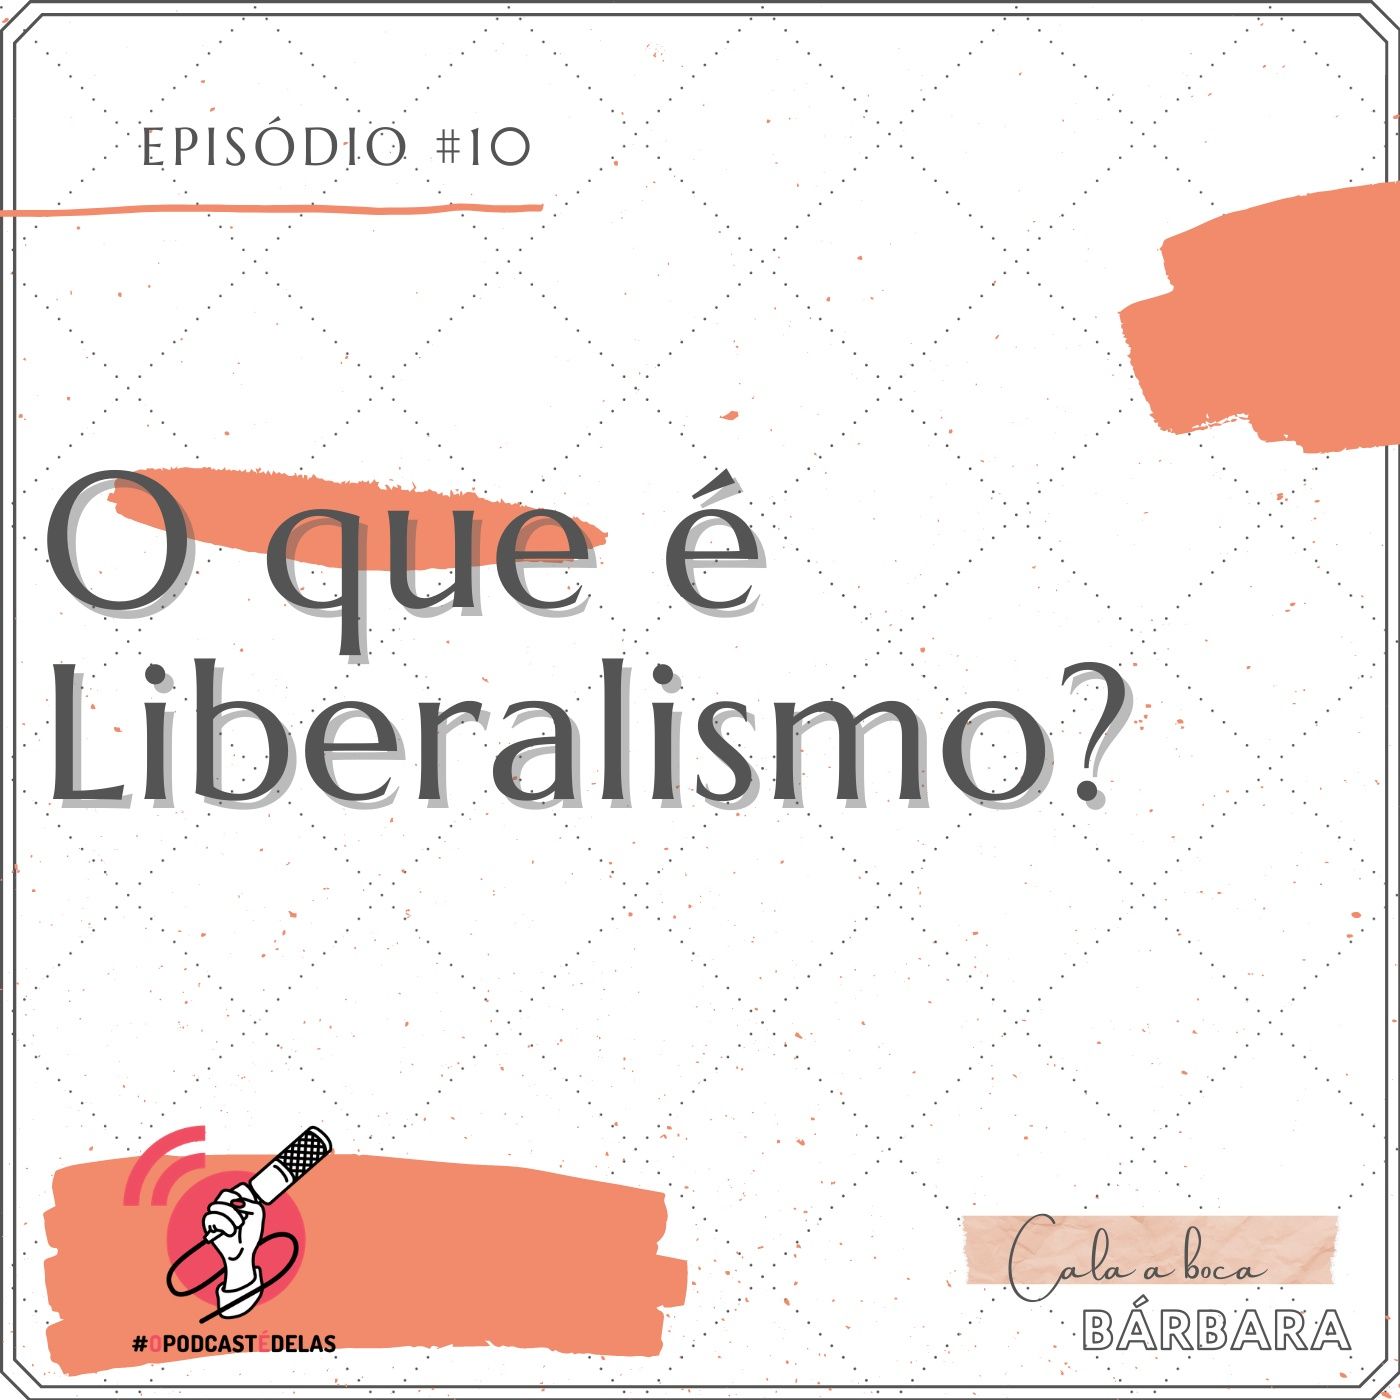 Cala a boca, Bárbara #10 – O que é Liberalismo?